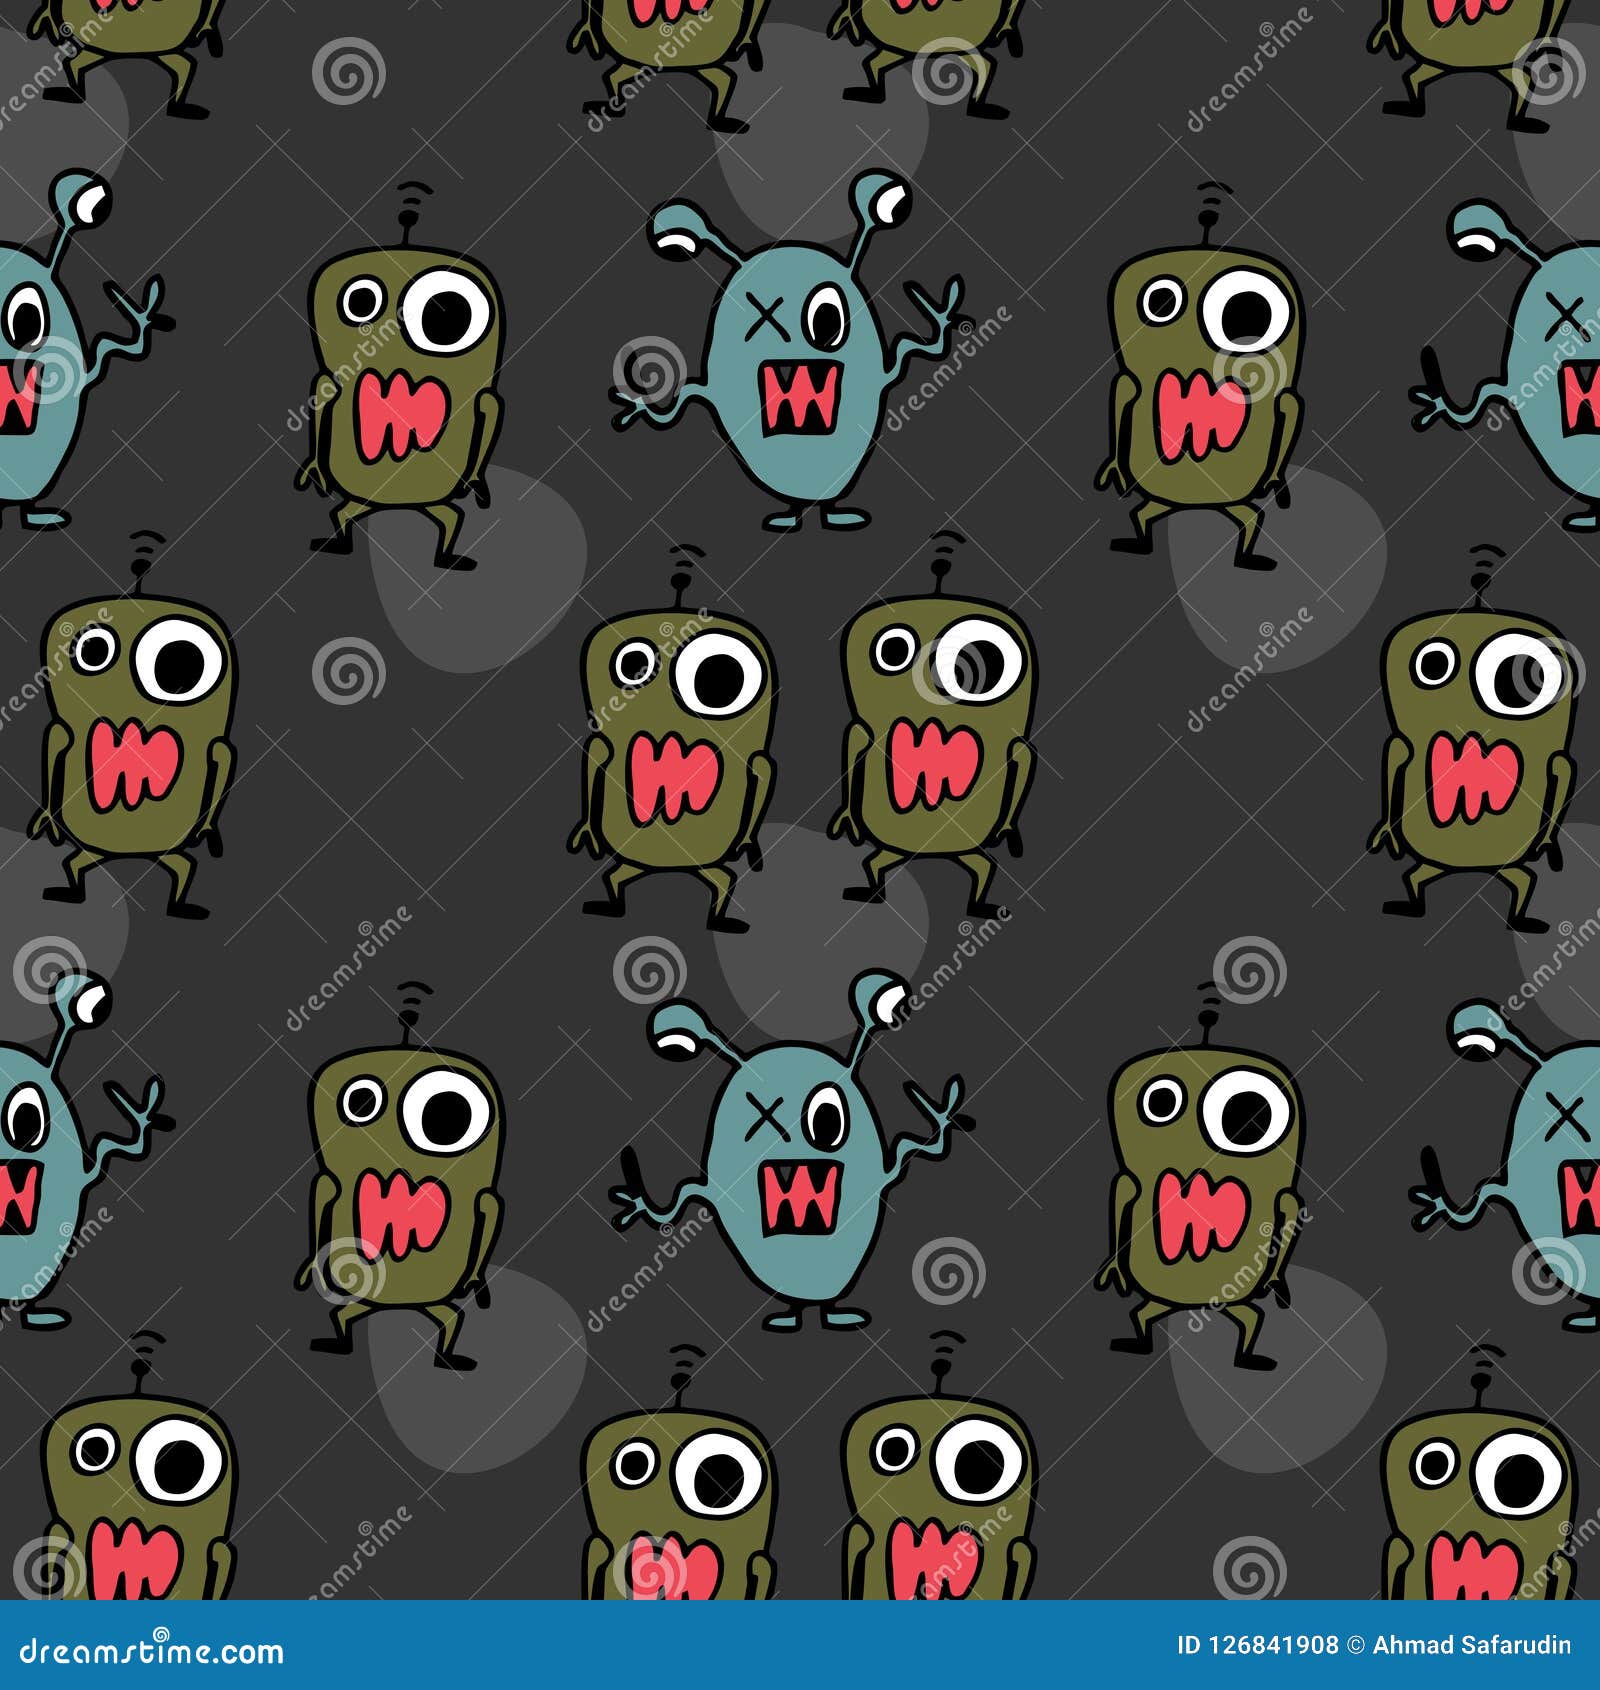 Alien Monster Pattern Seamless Background. Stock Vector - Illustration ...